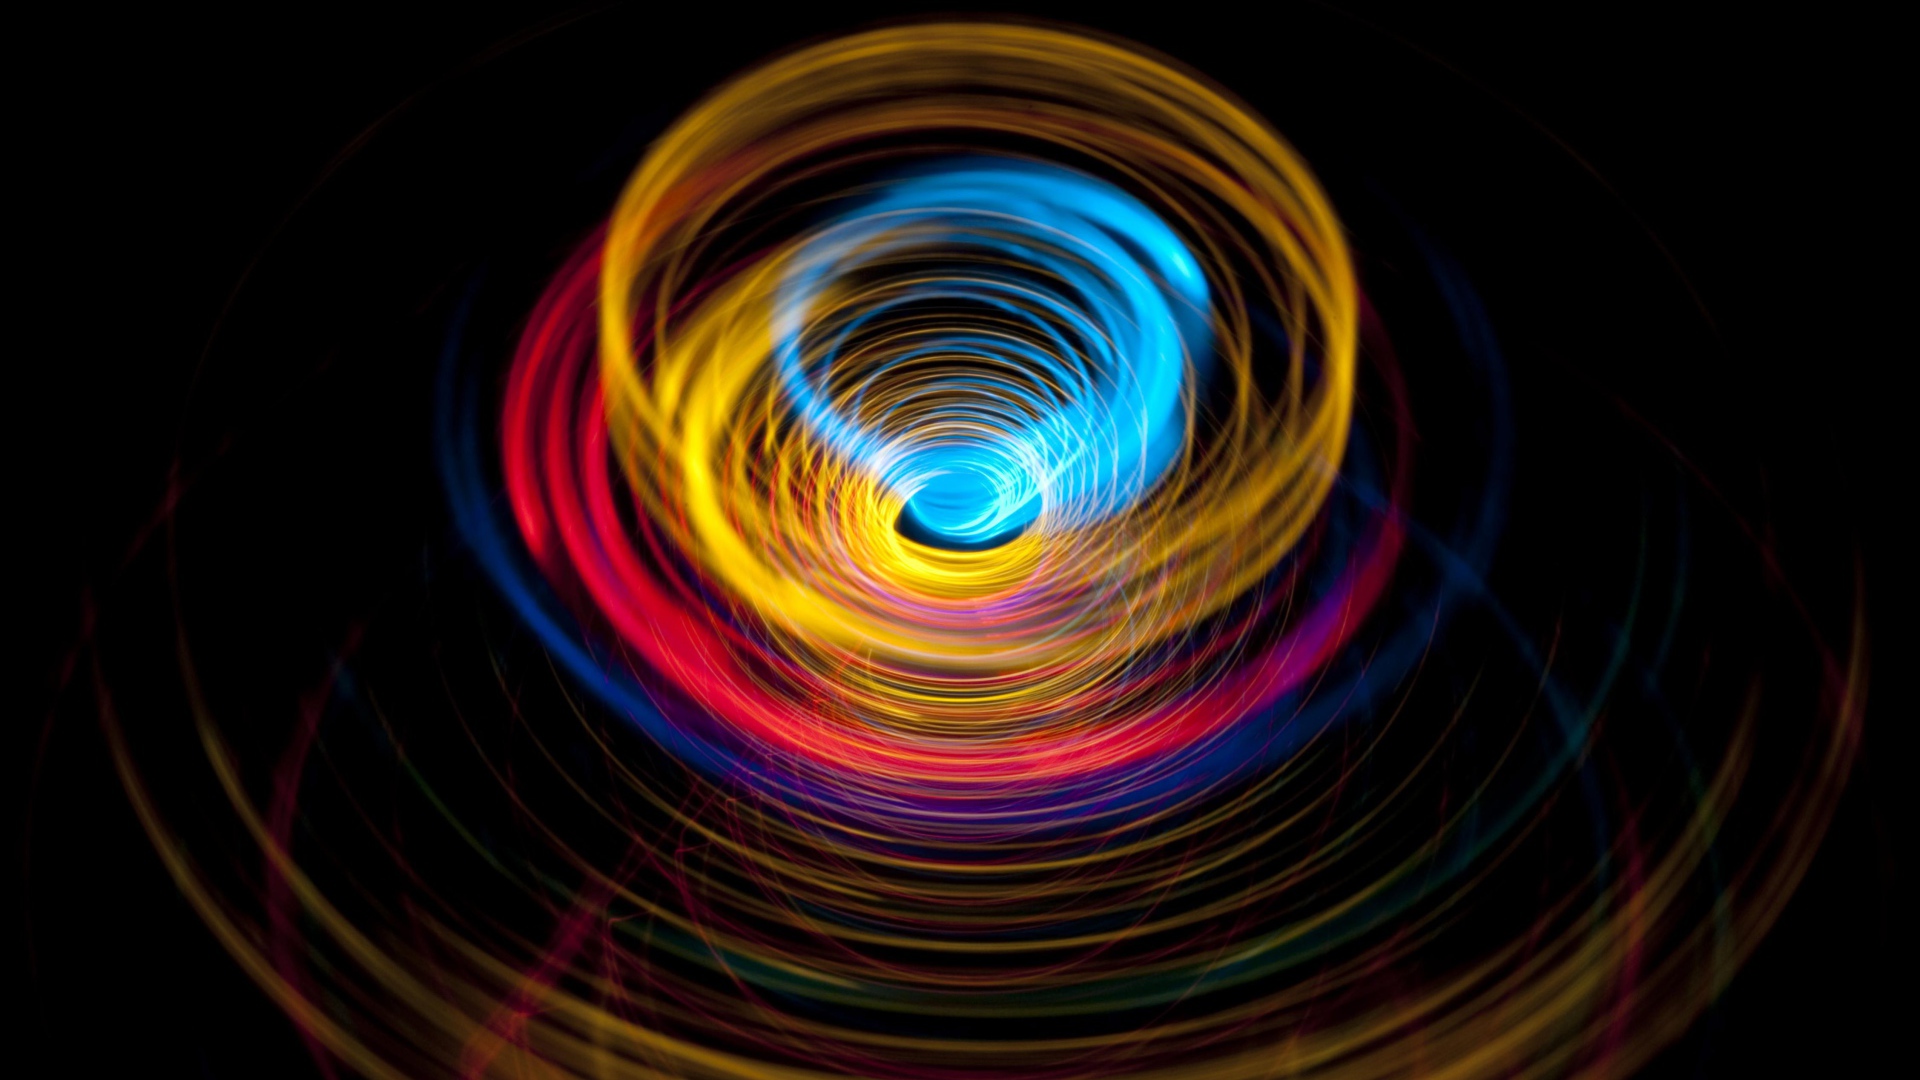 تصویر بک گراند آبسترکت به رنگ سیاه و طرح دایره ای رنگارنگی 